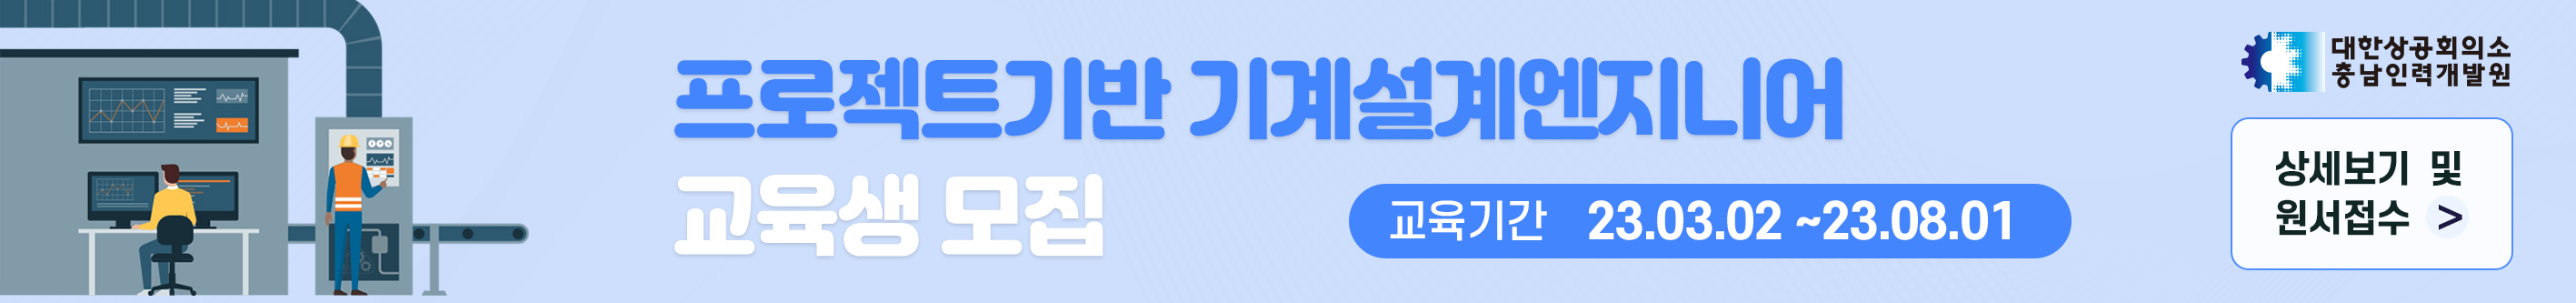 20221213_충남인력개발원_상단배너_2.jpg